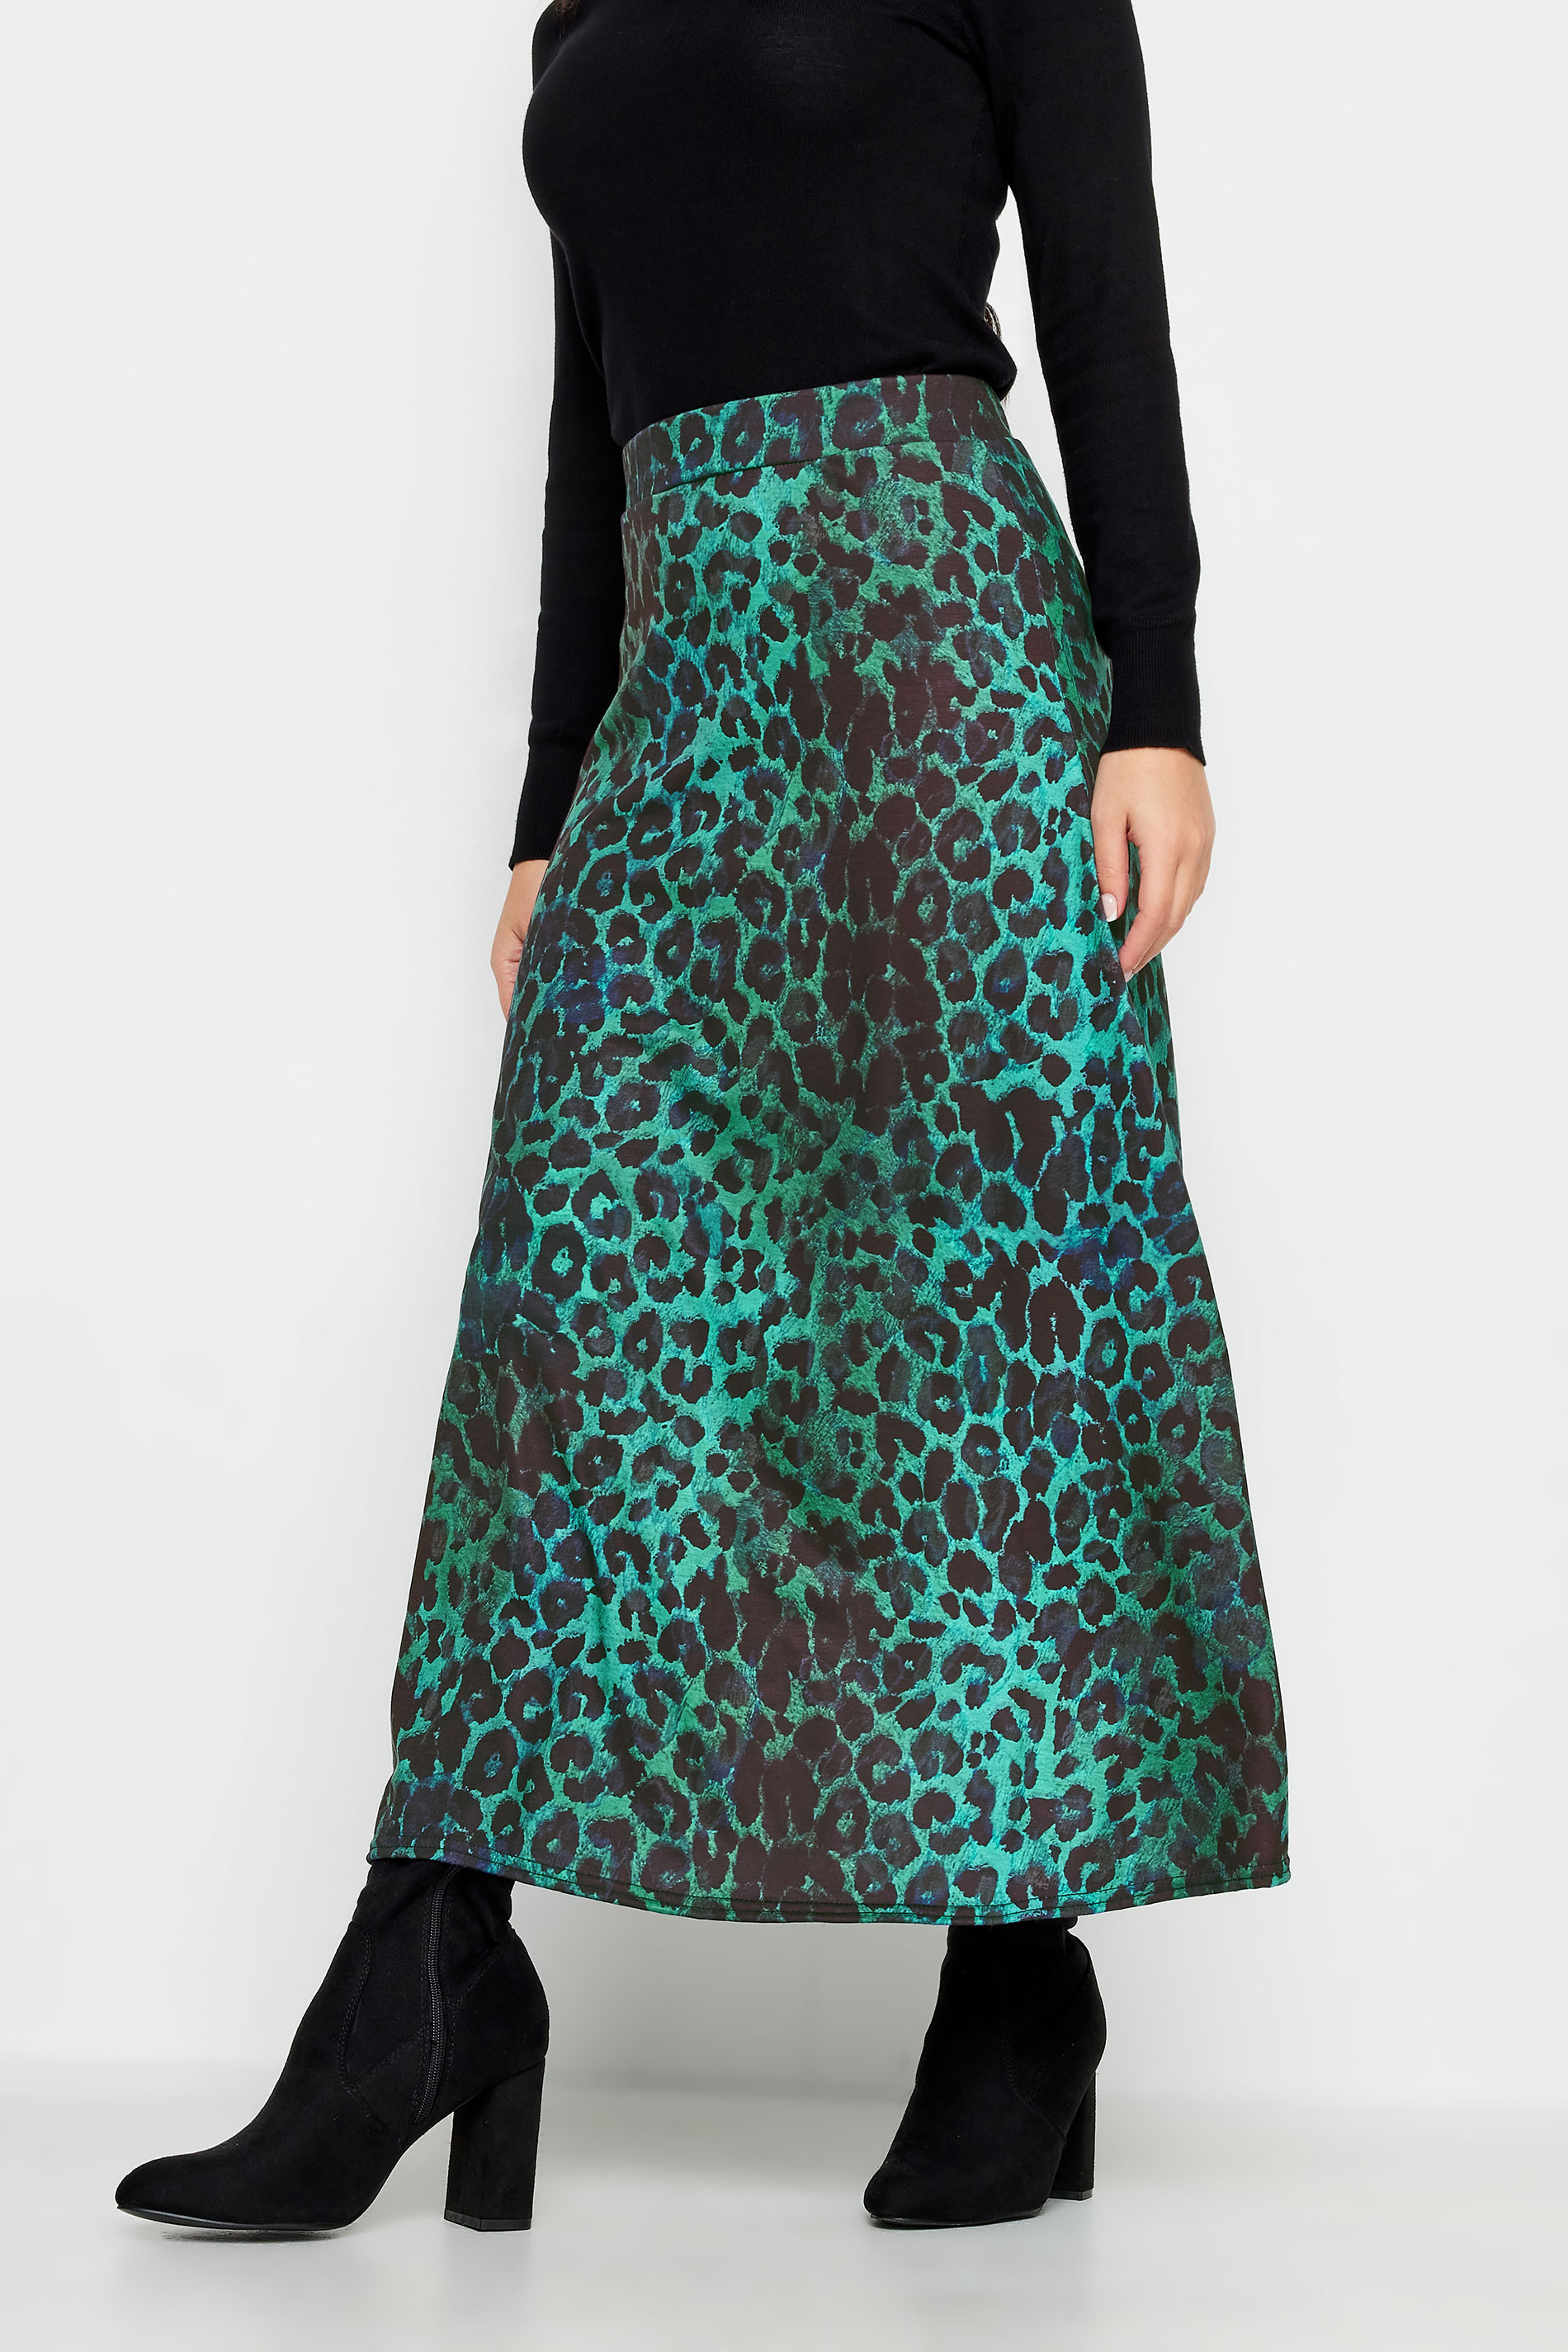 PixieGirl Blue Leopard Print Maxi Skirt | PixieGirl 1